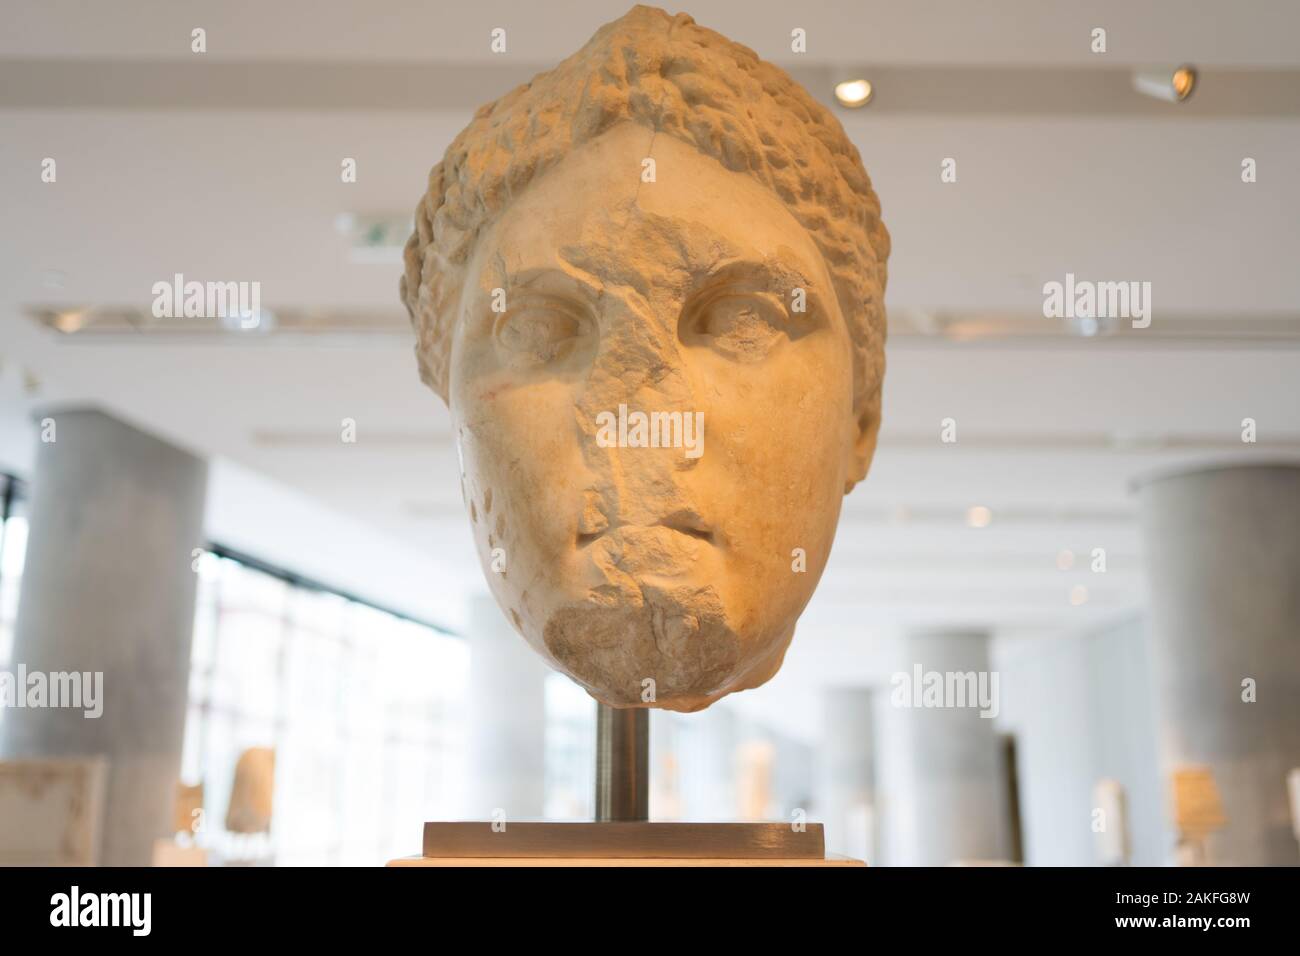 Athen, Griechenland - Dec 22, 2019: Ausstellung im Akropolis-Museum in Athen, Griechenland, Europa Stockfoto